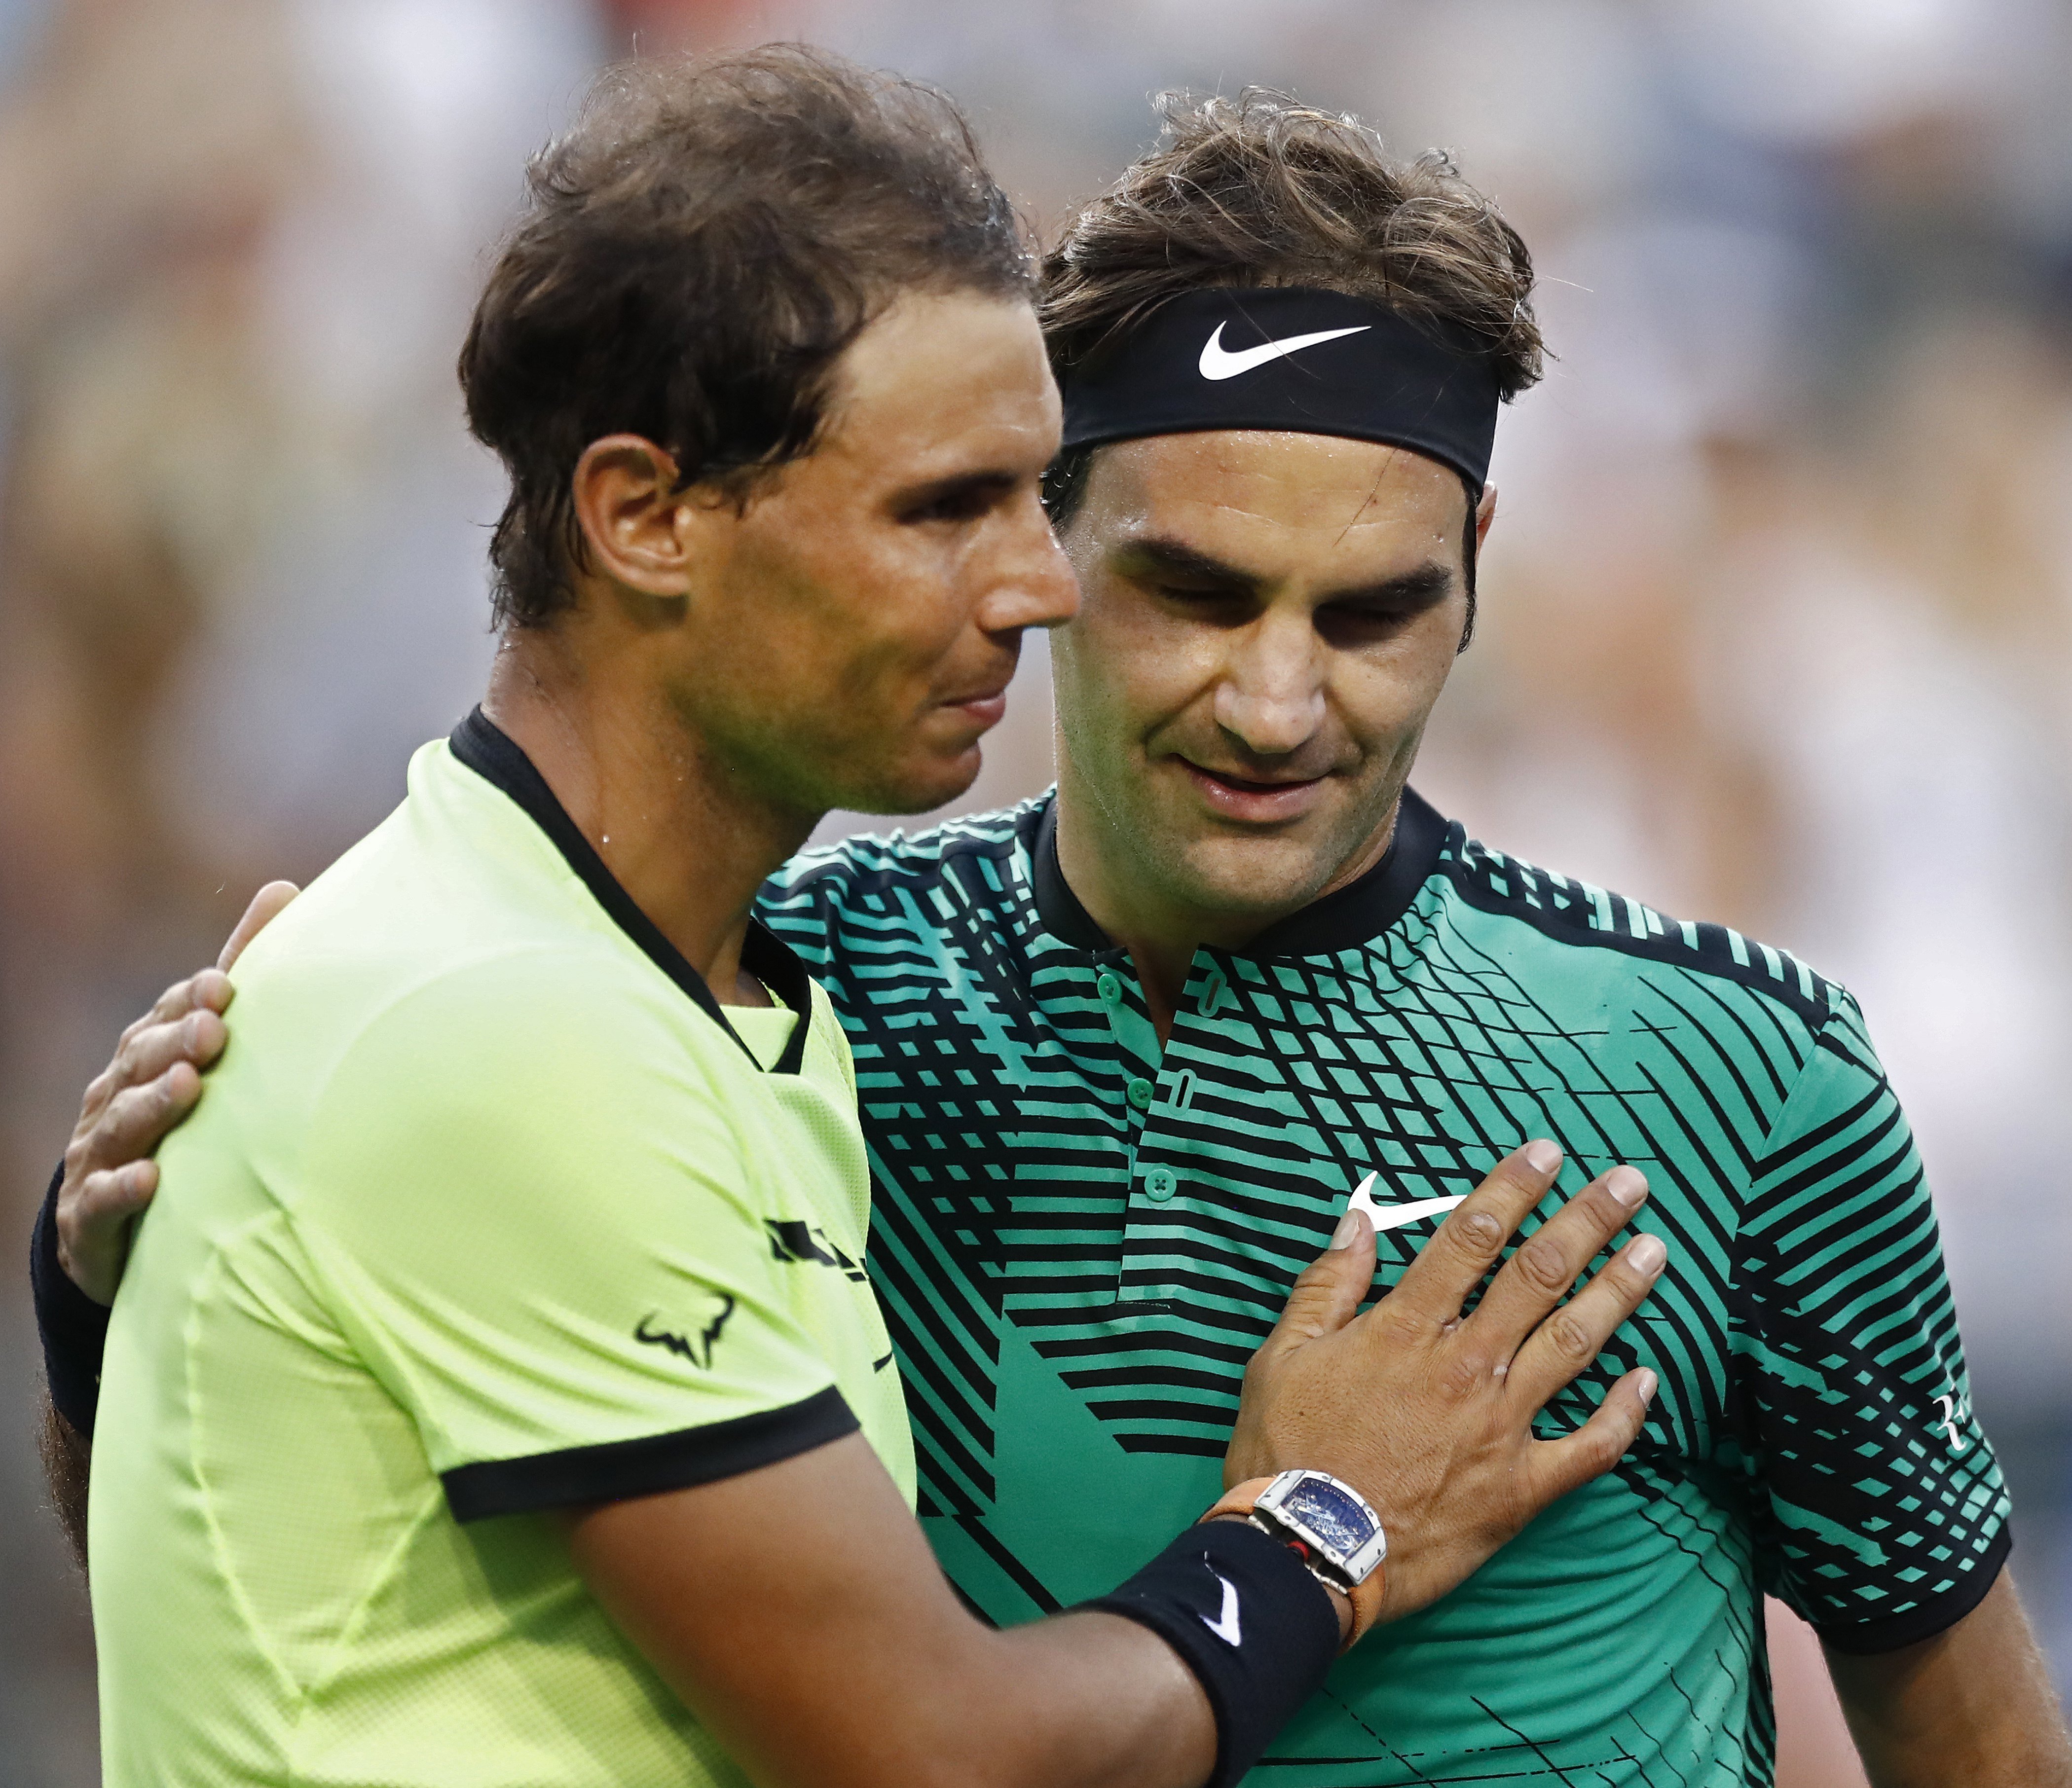 El último baile de Roger Federer será este viernes haciendo pareja con Rafa Nadal en la Laver Cup